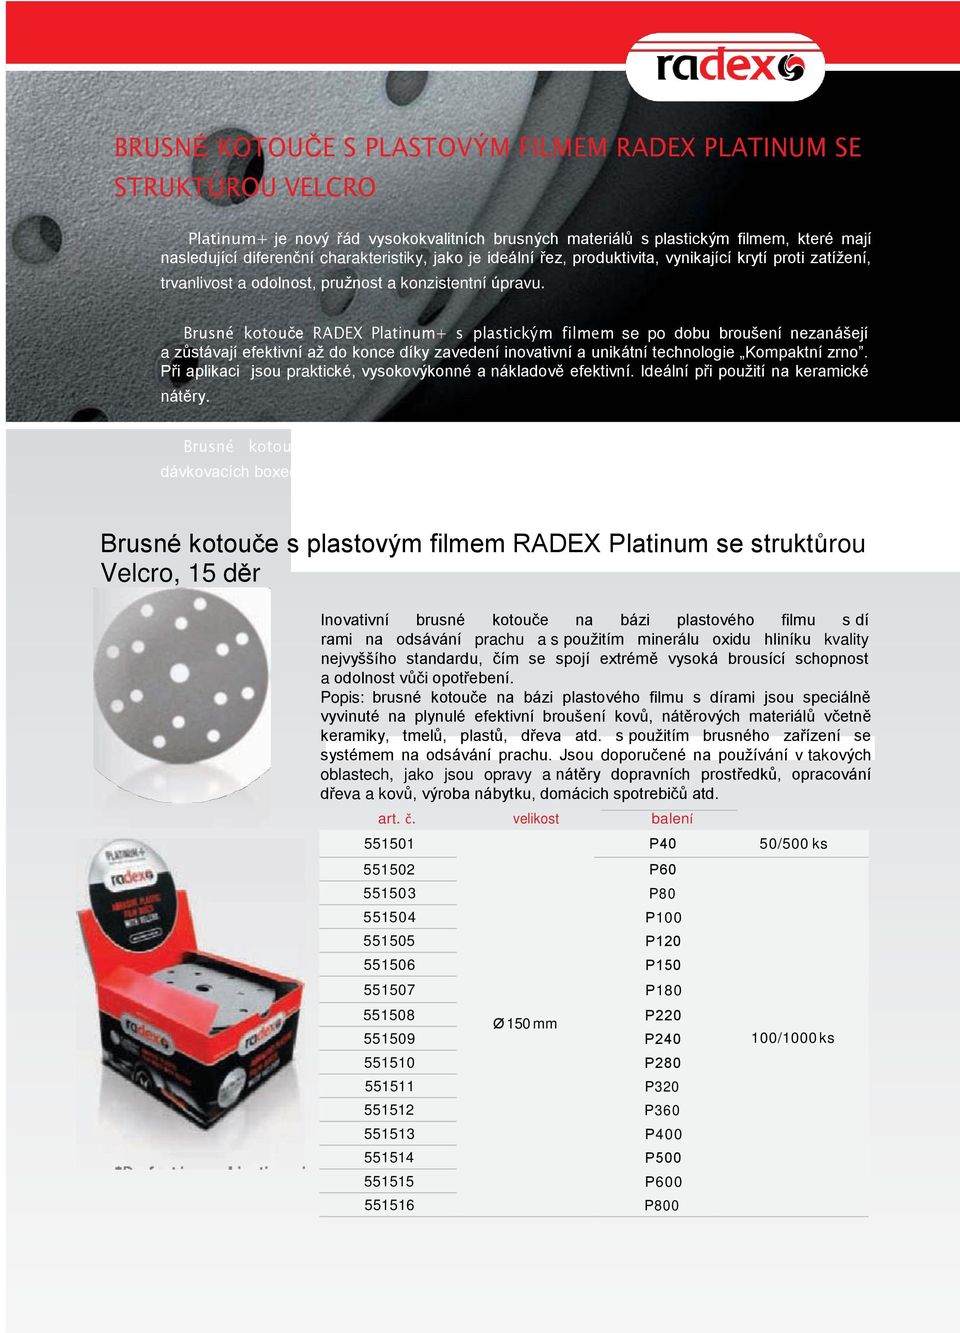 Brusné kotouče RADEX Platinum+ s plastickým filmem se po dobu broušení nezanášejí a zůstávají efektivní až do konce díky zavedení inovativní a unikátní technologie Kompaktní zrno.